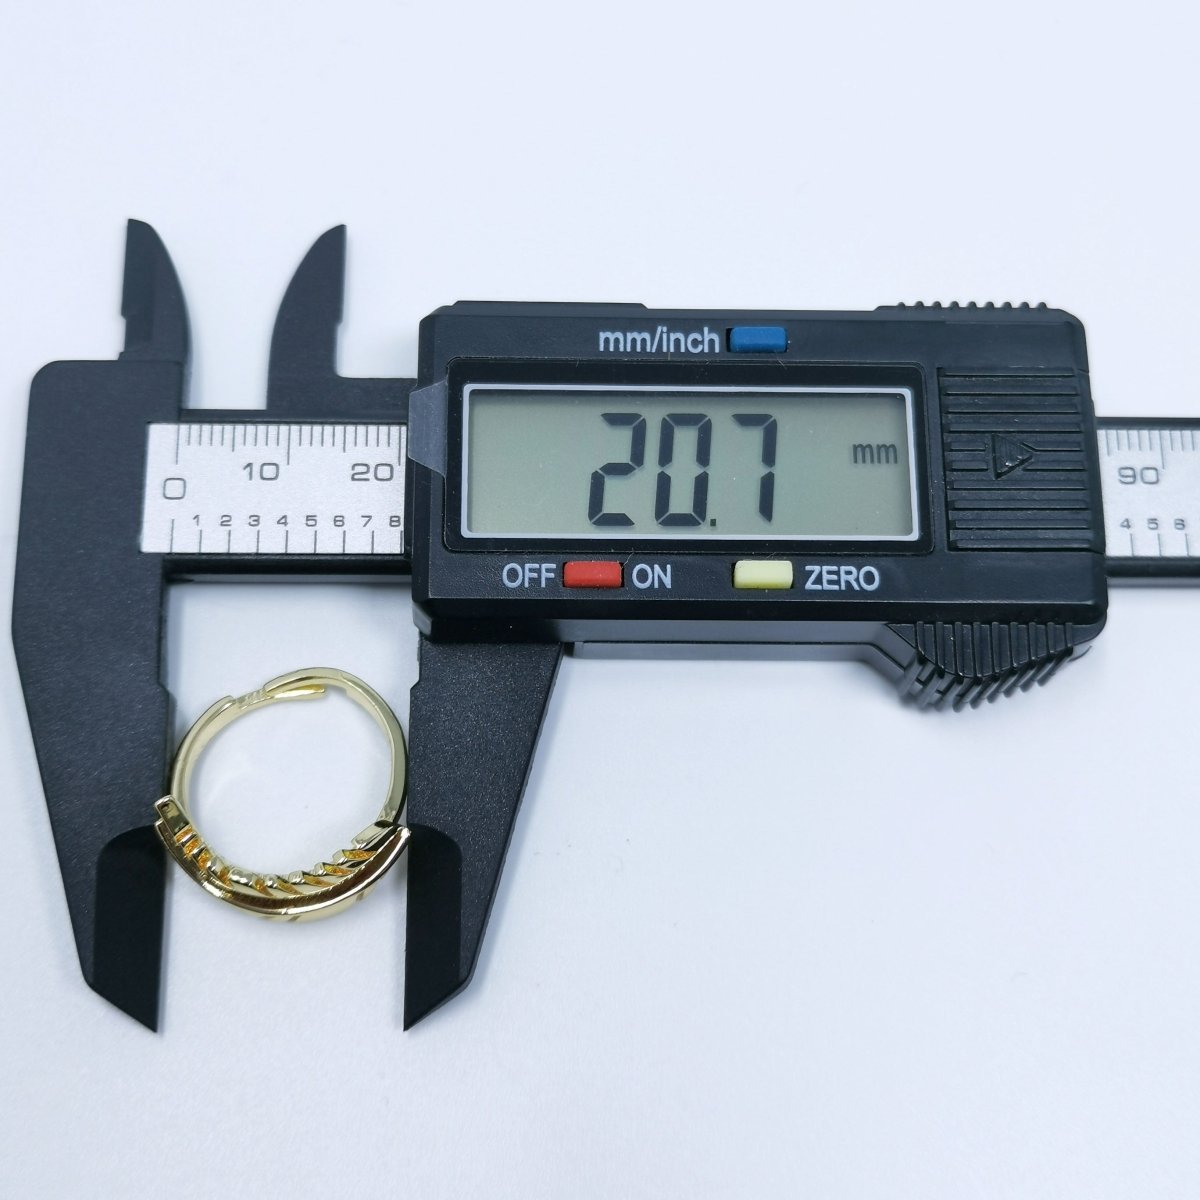 Single Leaf Gold Filled Adjustable Ring R-241 - DLUXCA